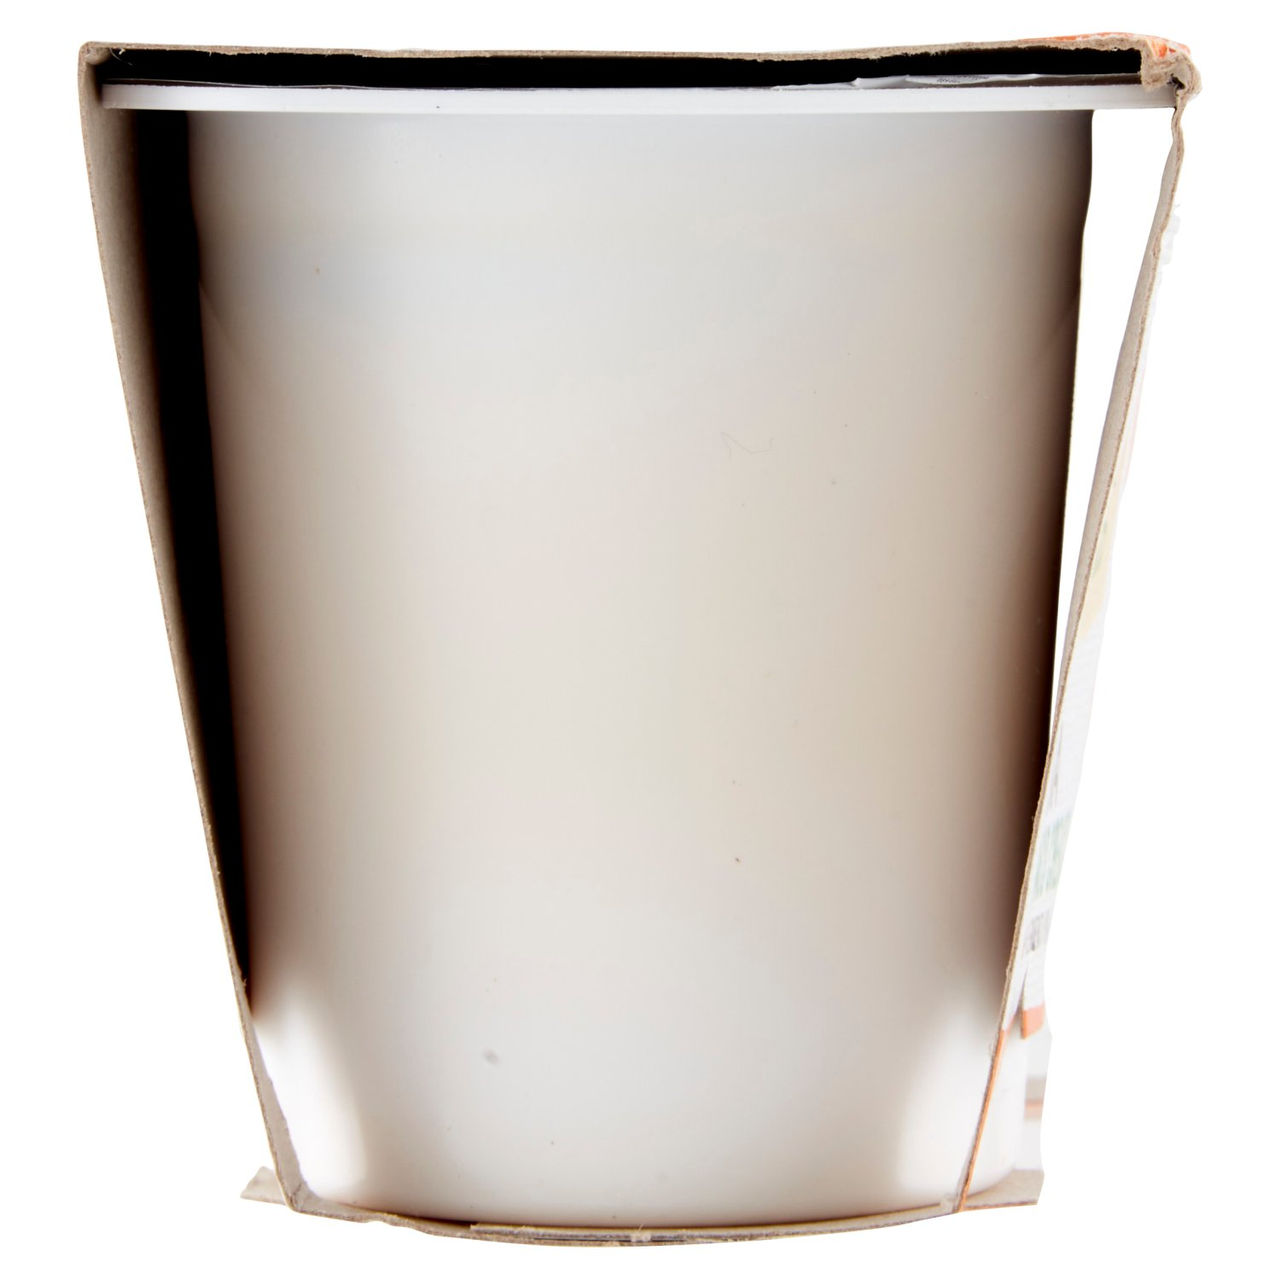 Soia Bianco Cremoso 2x125g Conad vendita online